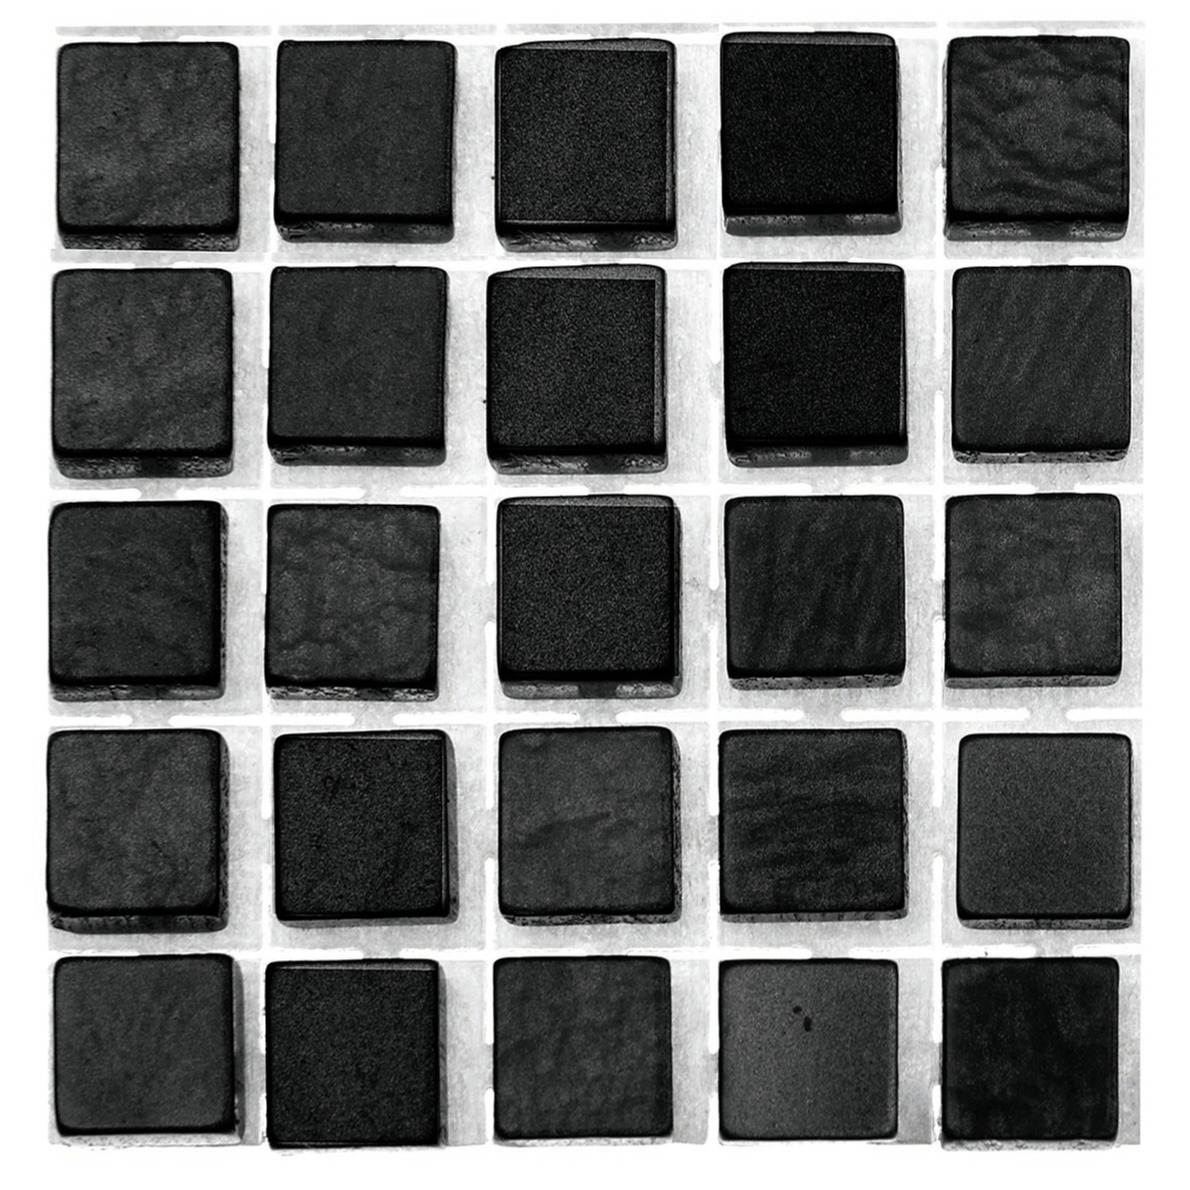 119x stuks mozaieken maken steentjes-tegels kleur zwart 0.5 x 0.5 x 0.2 cm